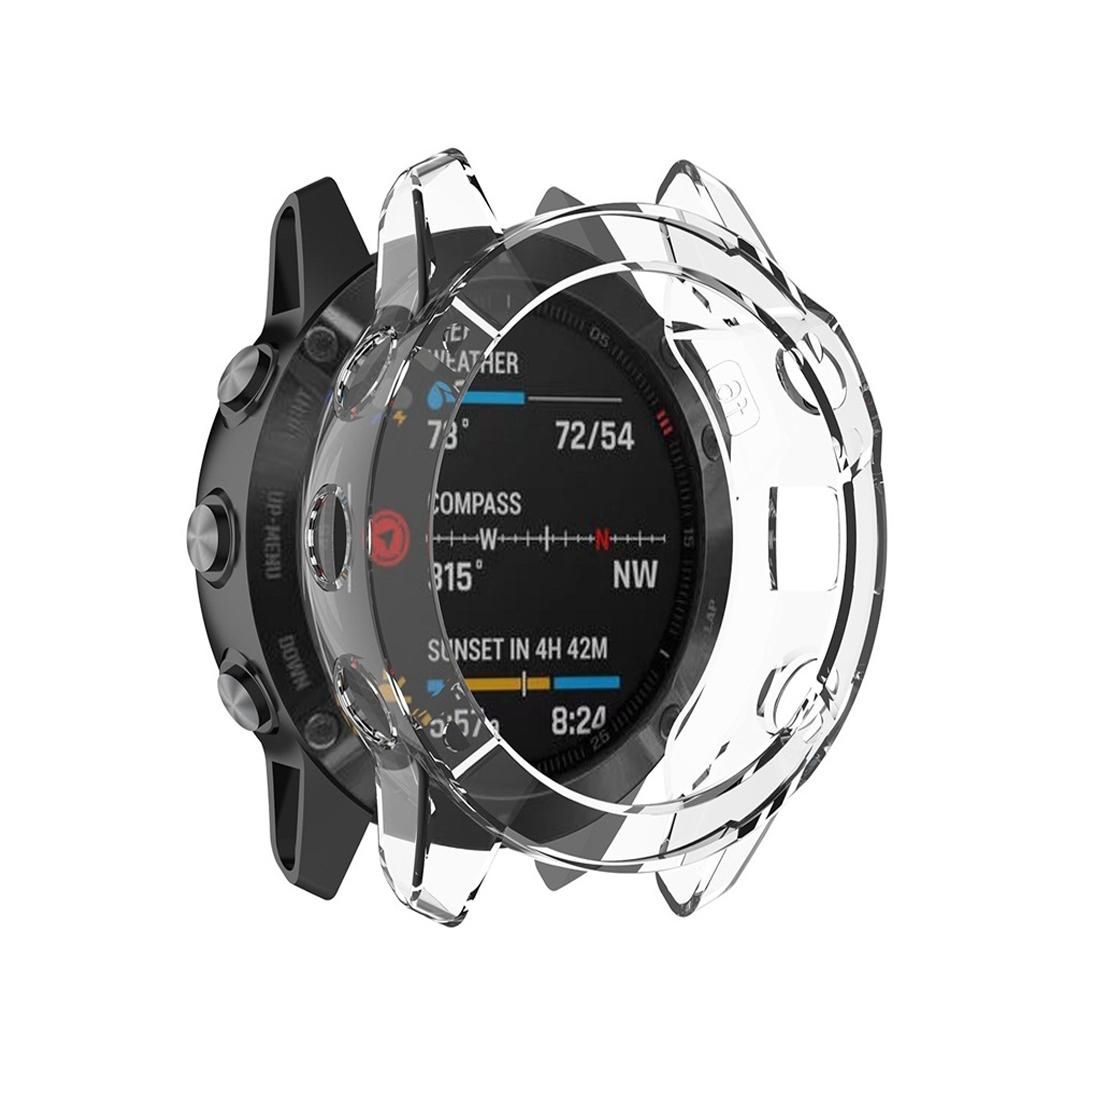 For Garmin Fenix 6 TPU Half Coverage Smart Watch Protevtice Case (White)